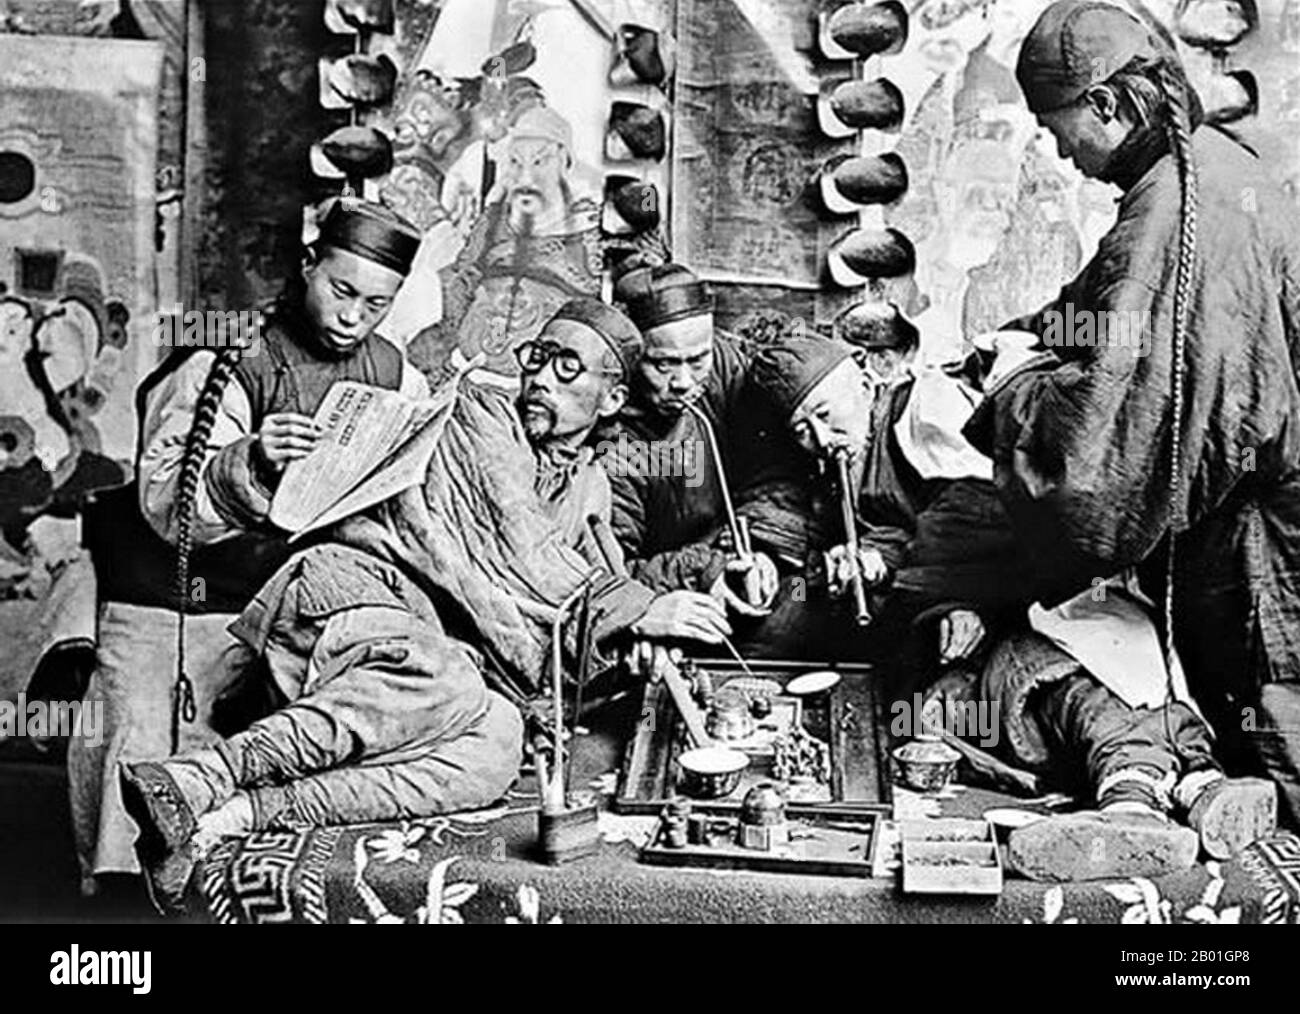 Ein Studio-Bild, das eine zeitgleiche abendländische Sicht auf China beschreibt, einschließlich Opiumrauchen und Queues aus der Qing-Dynastie. Auf das Ende der Qing-Ära datiert, wahrscheinlich um 1900. Stockfoto